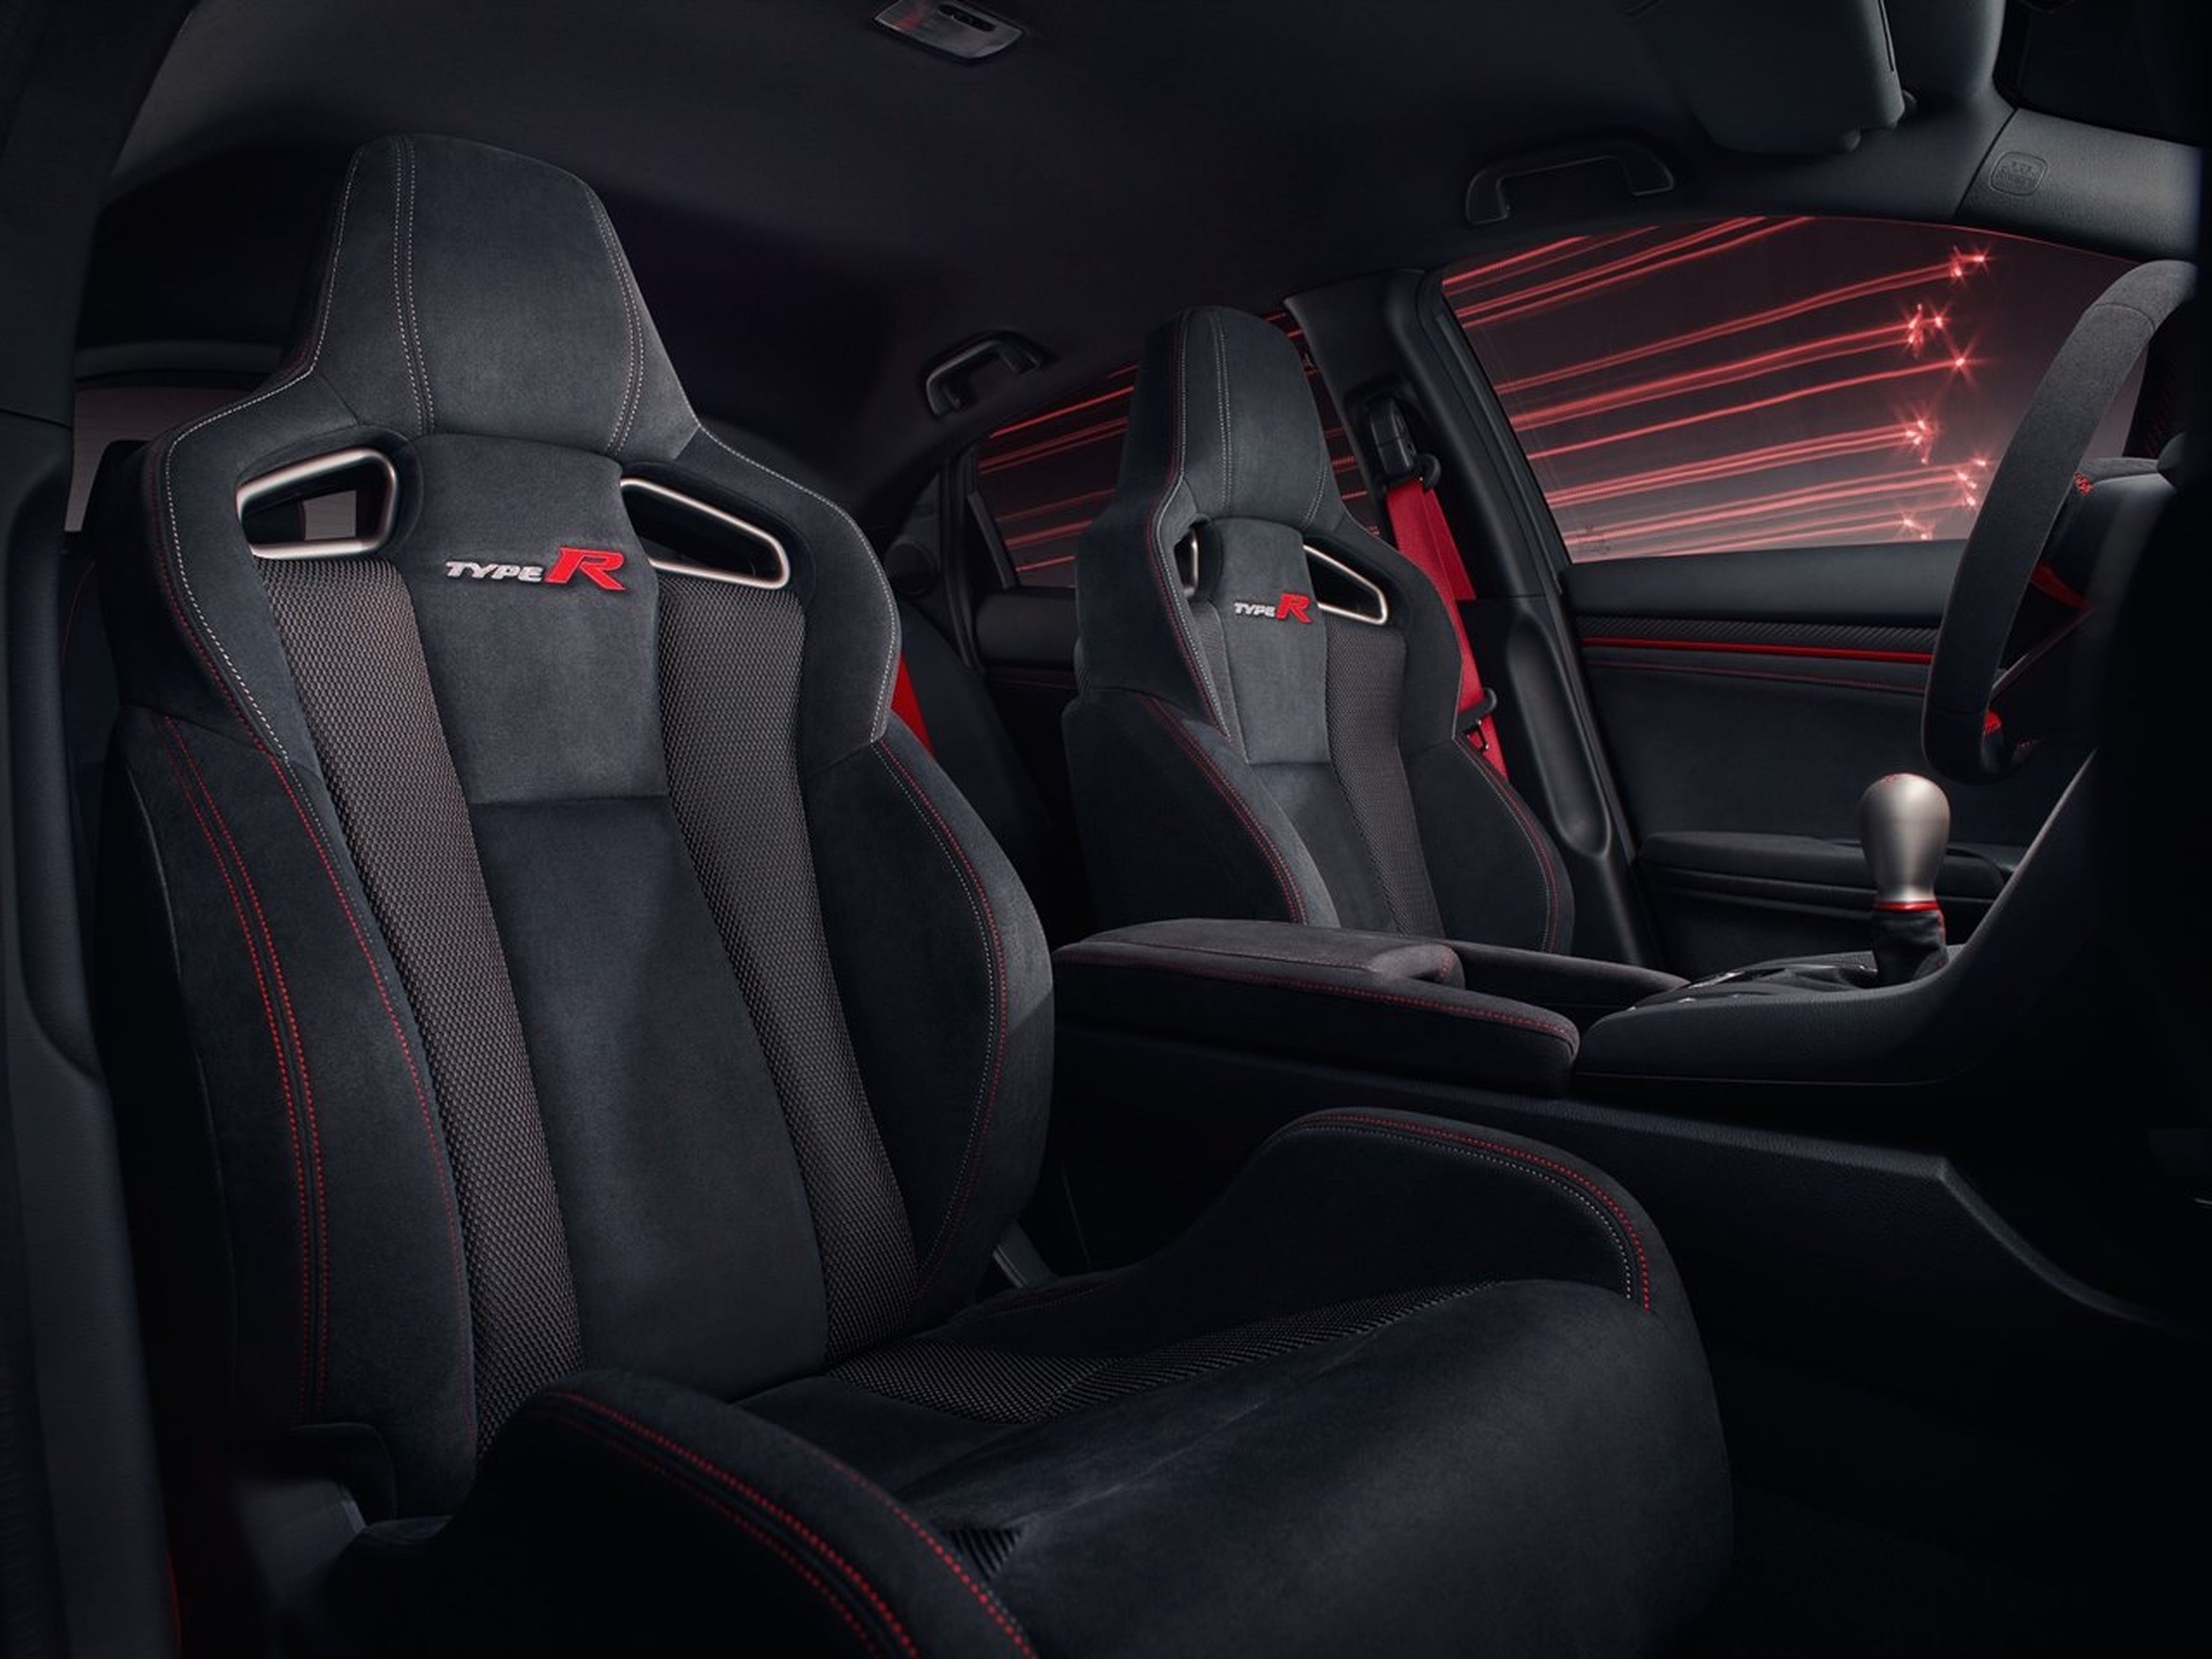 Honda Civic Type R interior asientos